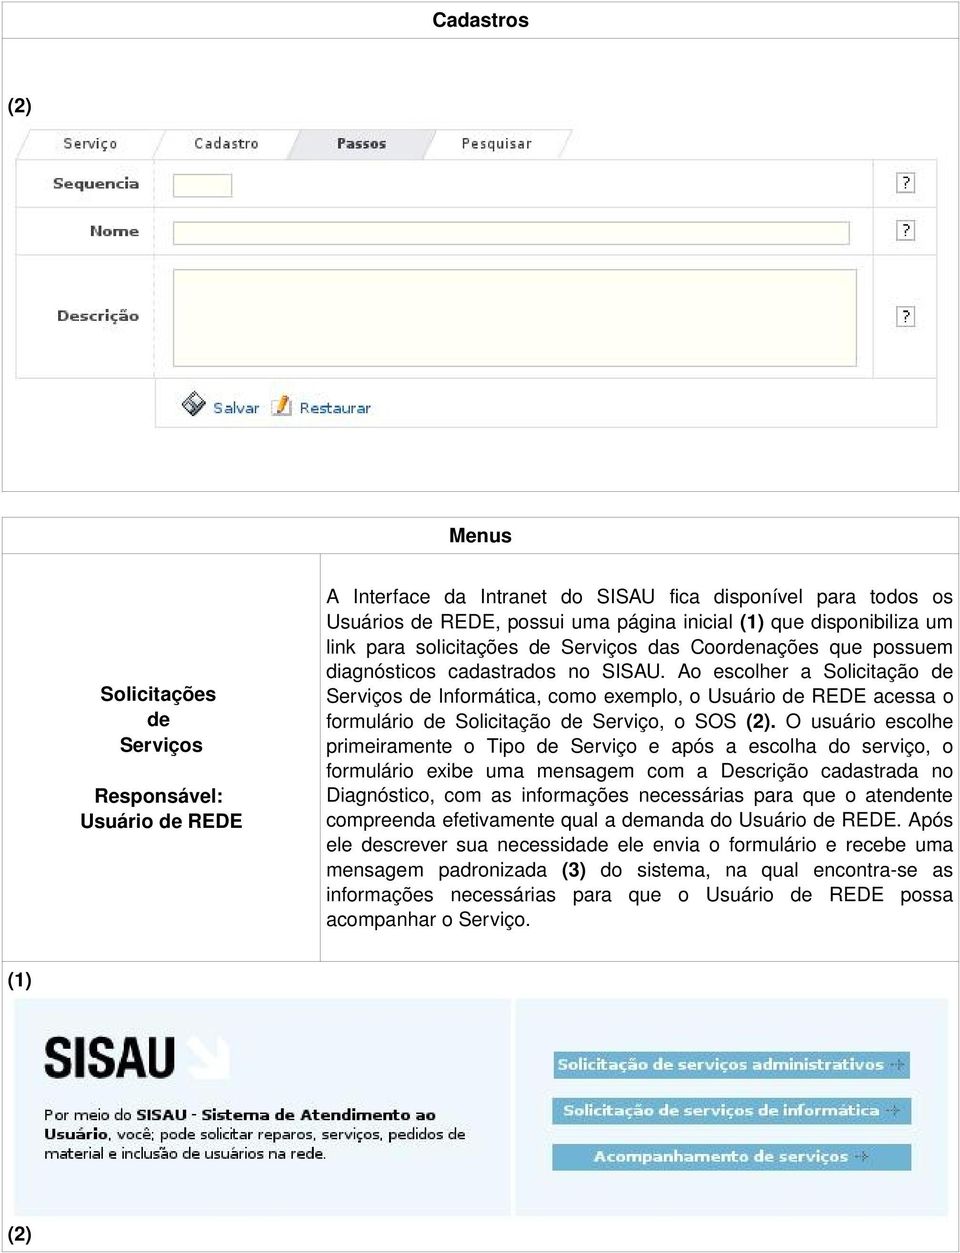 Ao escolher a Solicitação de Serviços de Informática, como exemplo, o Usuário de REDE acessa o formulário de Solicitação de Serviço, o SOS (2).